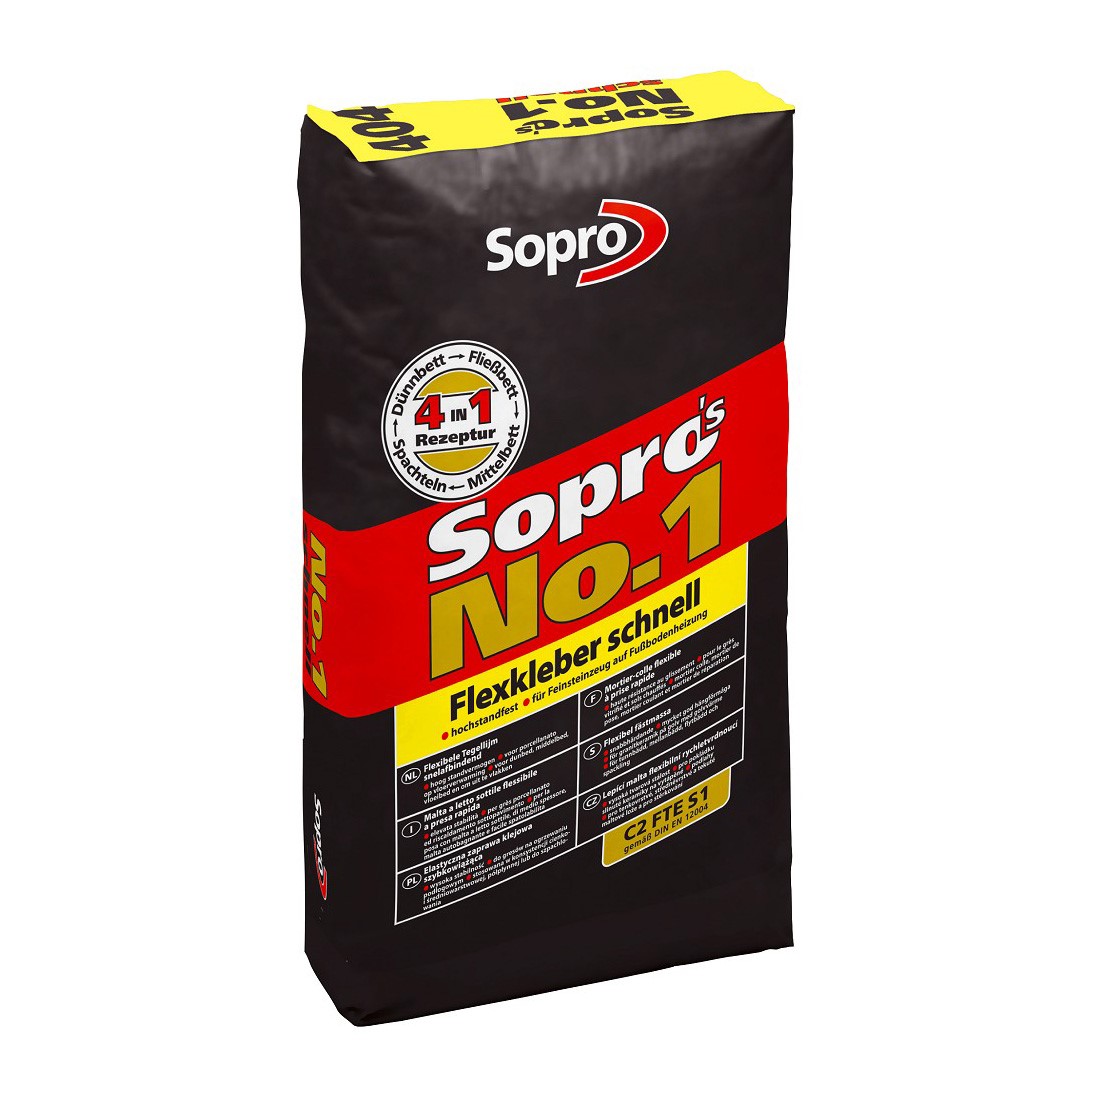 Sopro's Nr.1 Schnell-Flexkleber 5kg, #404 